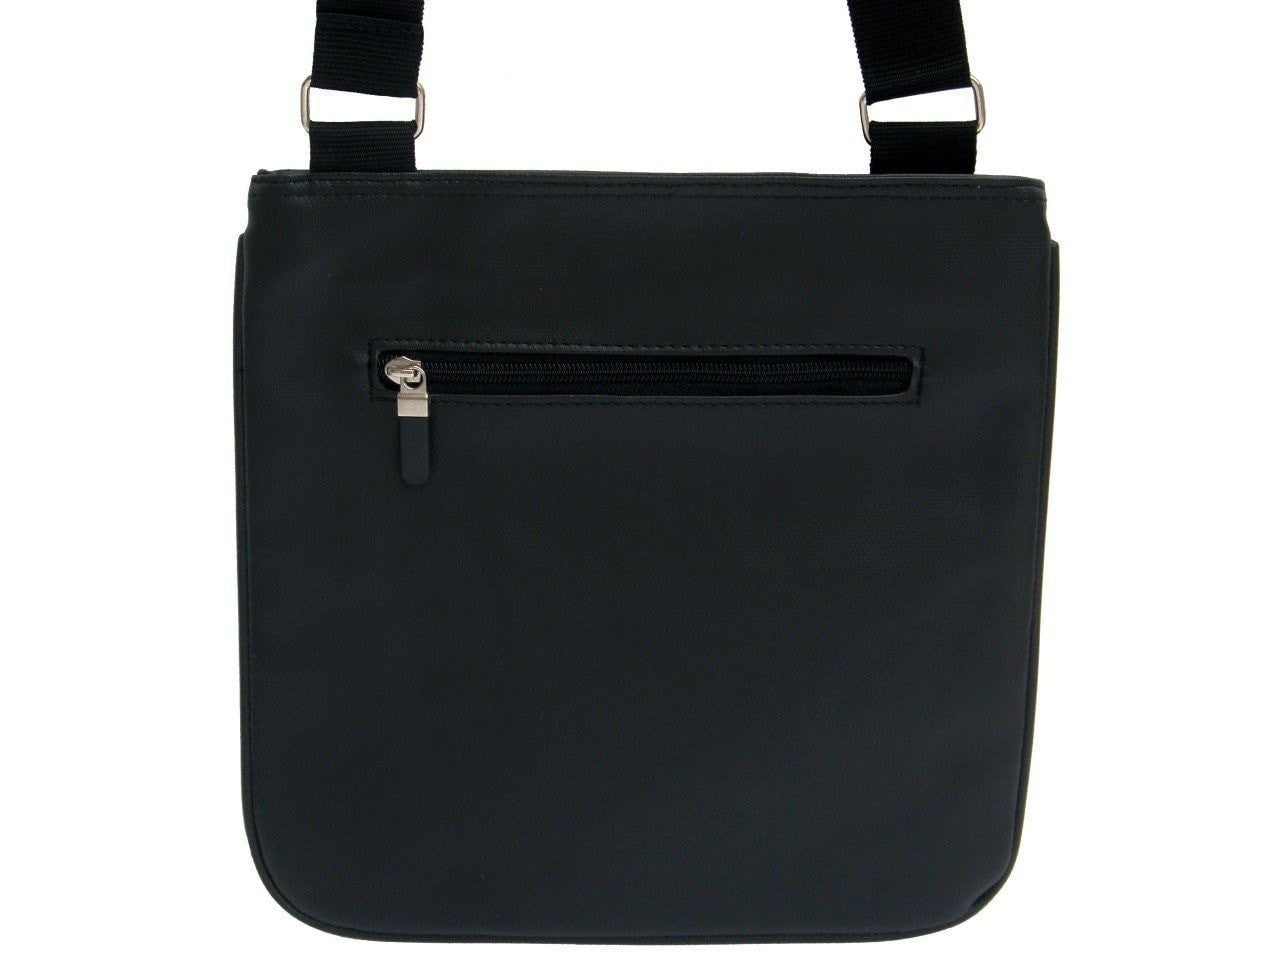 Buy Audrey Hepburn Handbag 60s Leather Bag Retro Vinyl Bag Online in India  